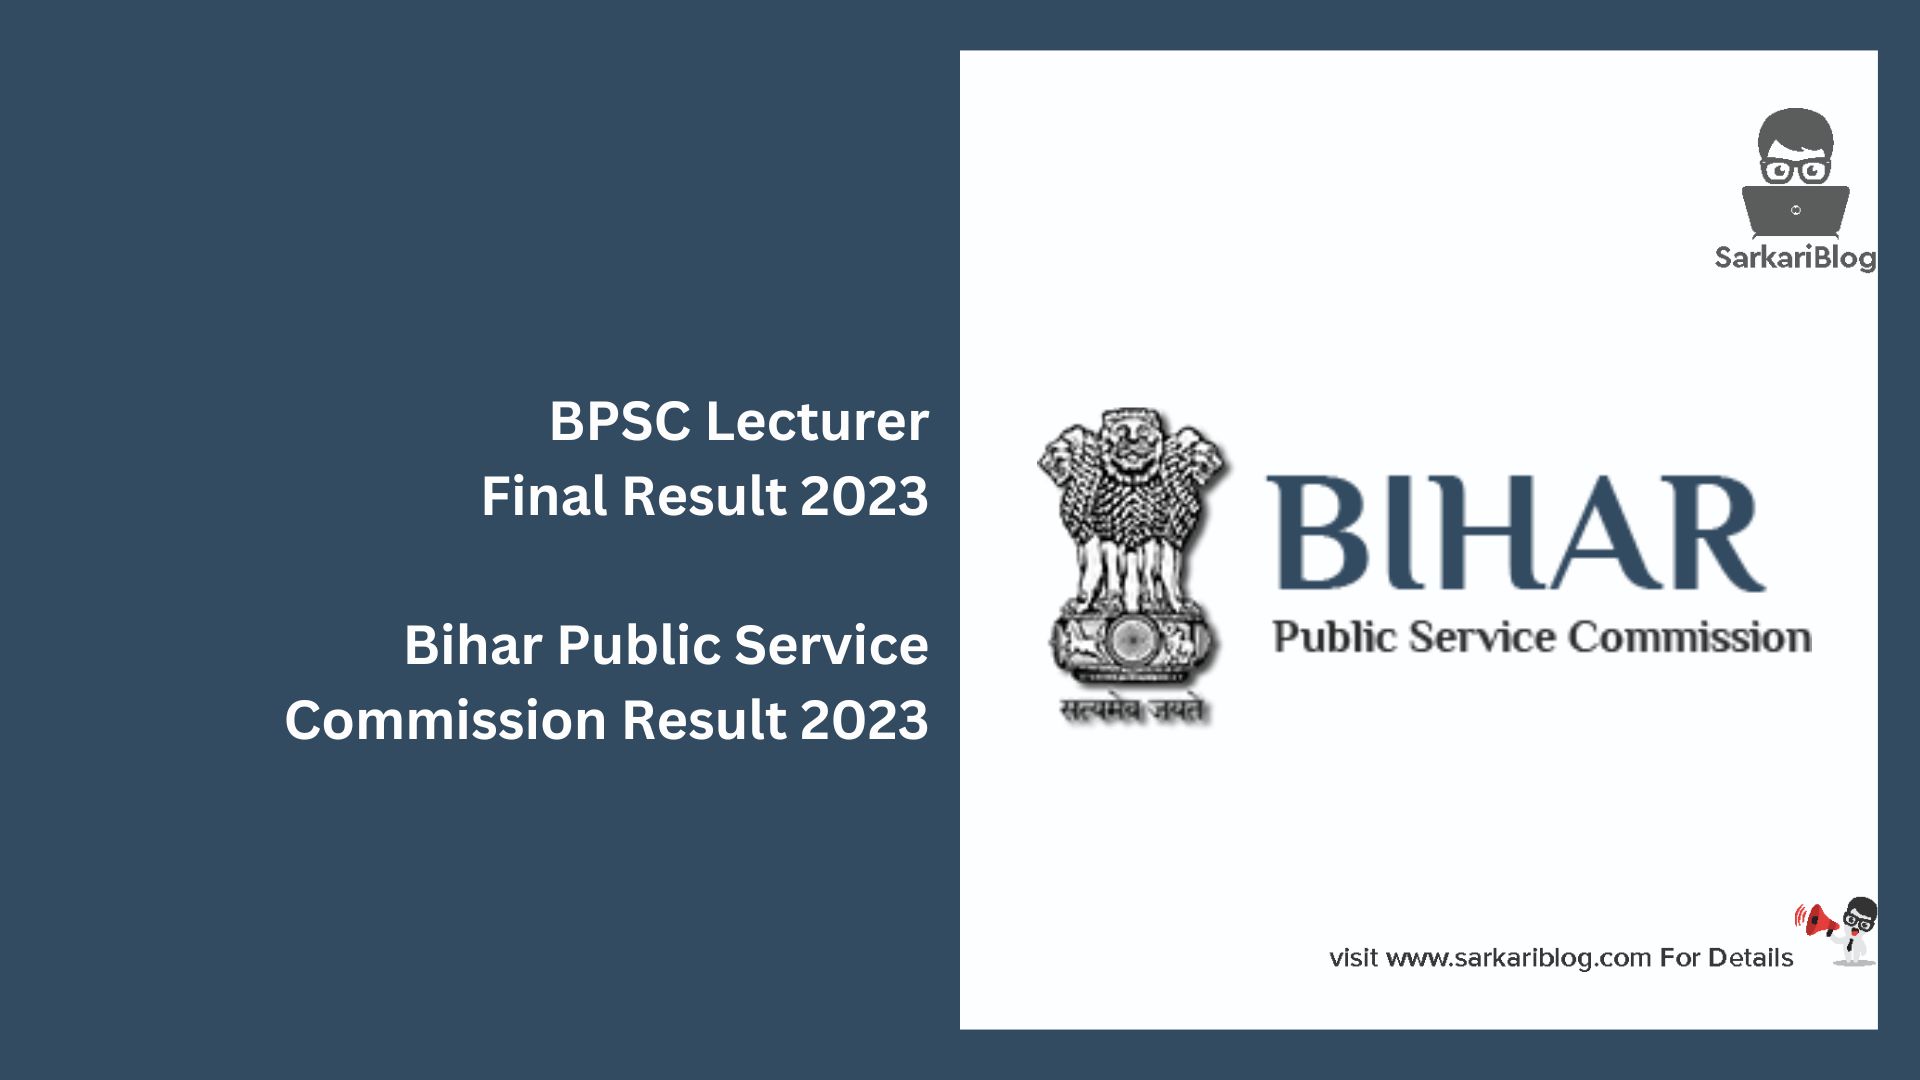 BPSC Lecturer Final Result 2023